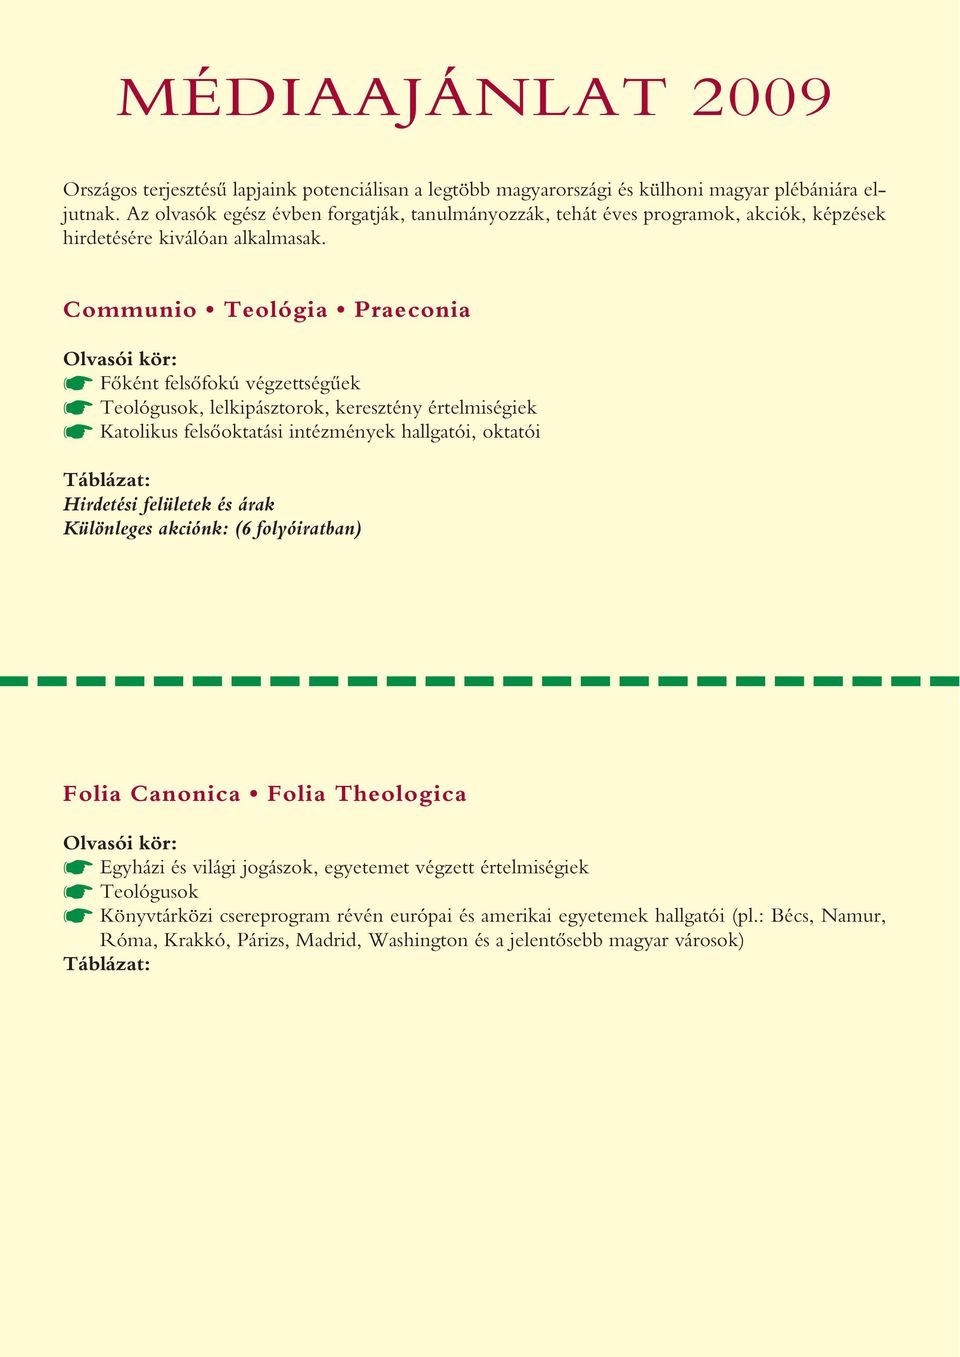 Communio Teológia Praeconia Olvasói kör: Fôként felsôfokú végzettségûek Teológusok, lelkipásztorok, keresztény értelmiségiek Katolikus felsôoktatási intézmények hallgatói, oktatói Táblázat: